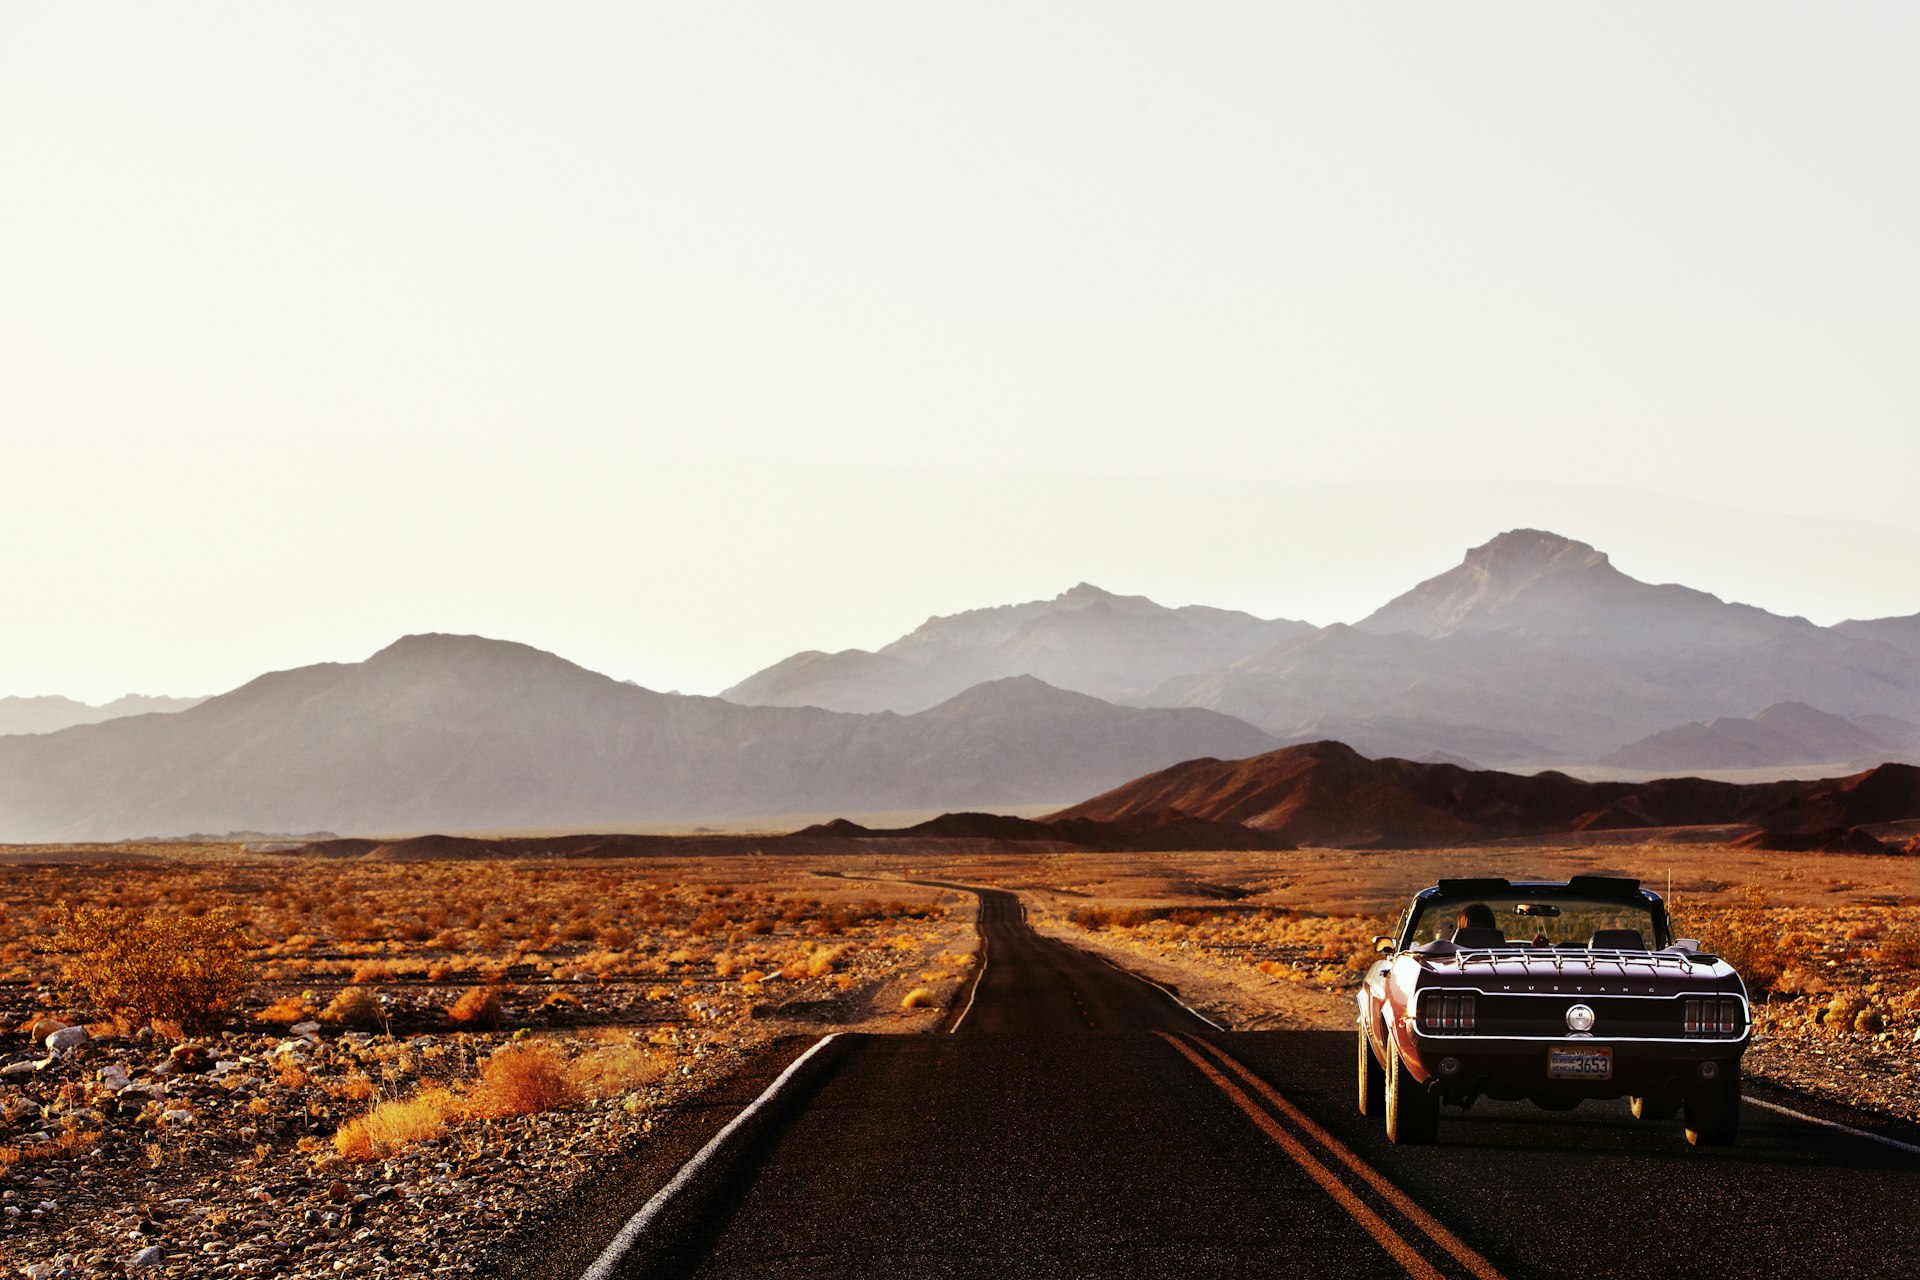 A car driving down a road that cuts through a desert landscape